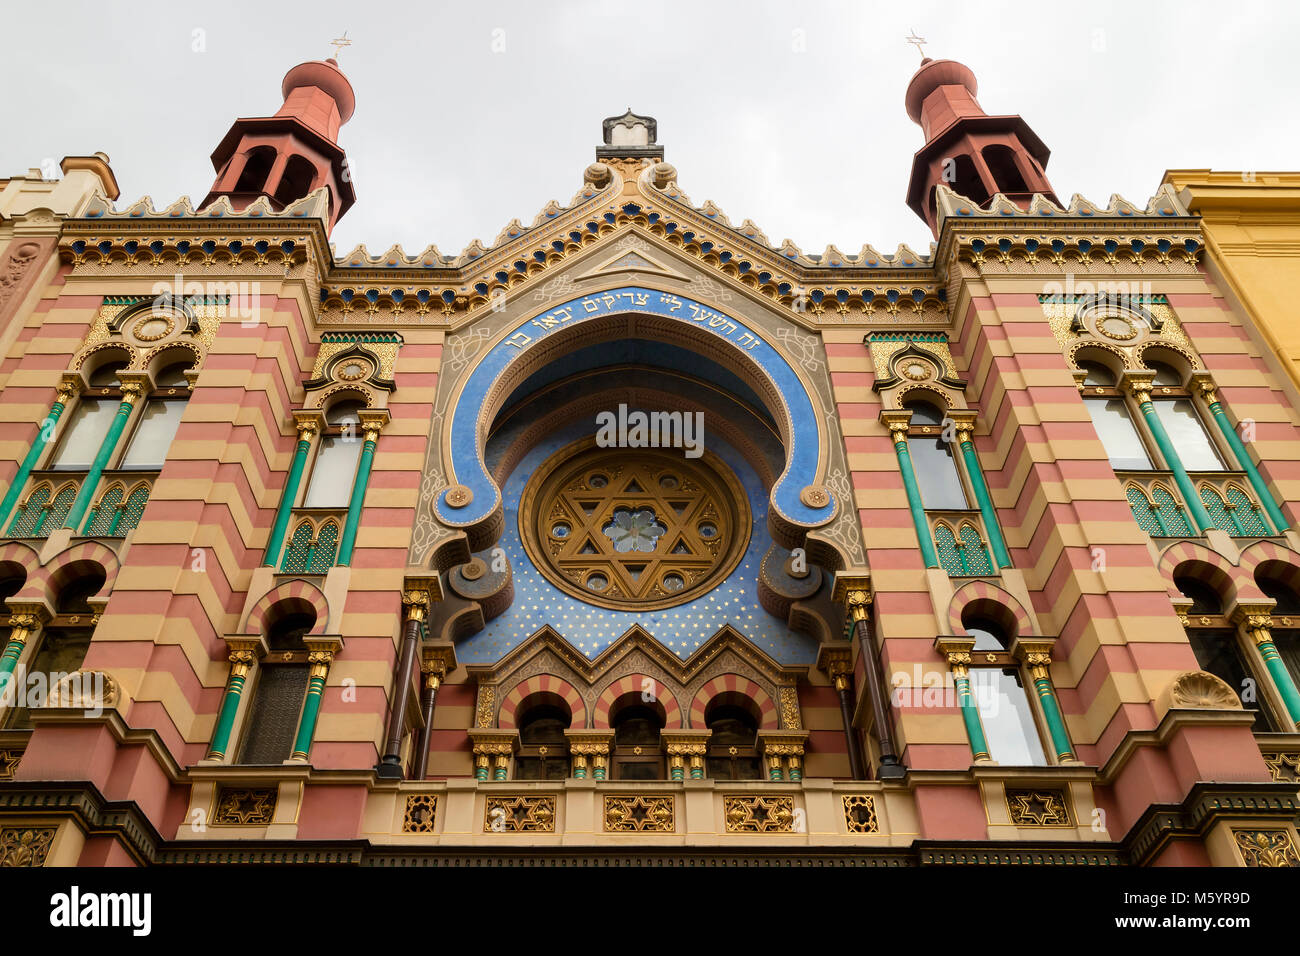 Praga, Repubblica Ceca - 7 Ottobre 2017: la facciata della Vecchia Sinagoga di Praga, dal quartiere ebraico Repubblica Ceca Foto Stock